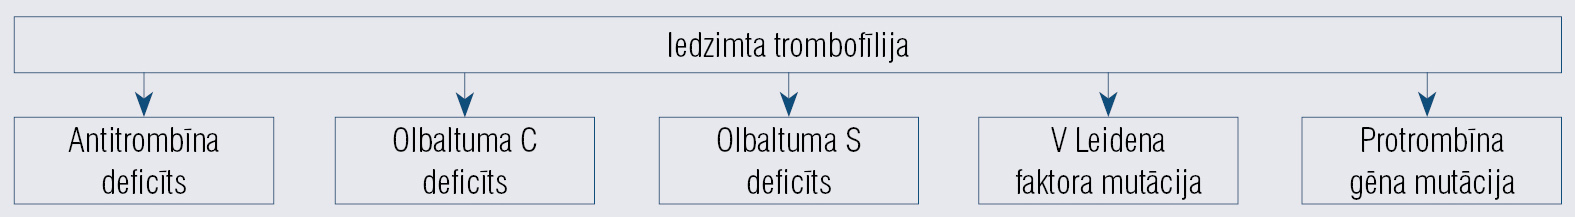 Iedzimtas trombofīlijas veidi [8]